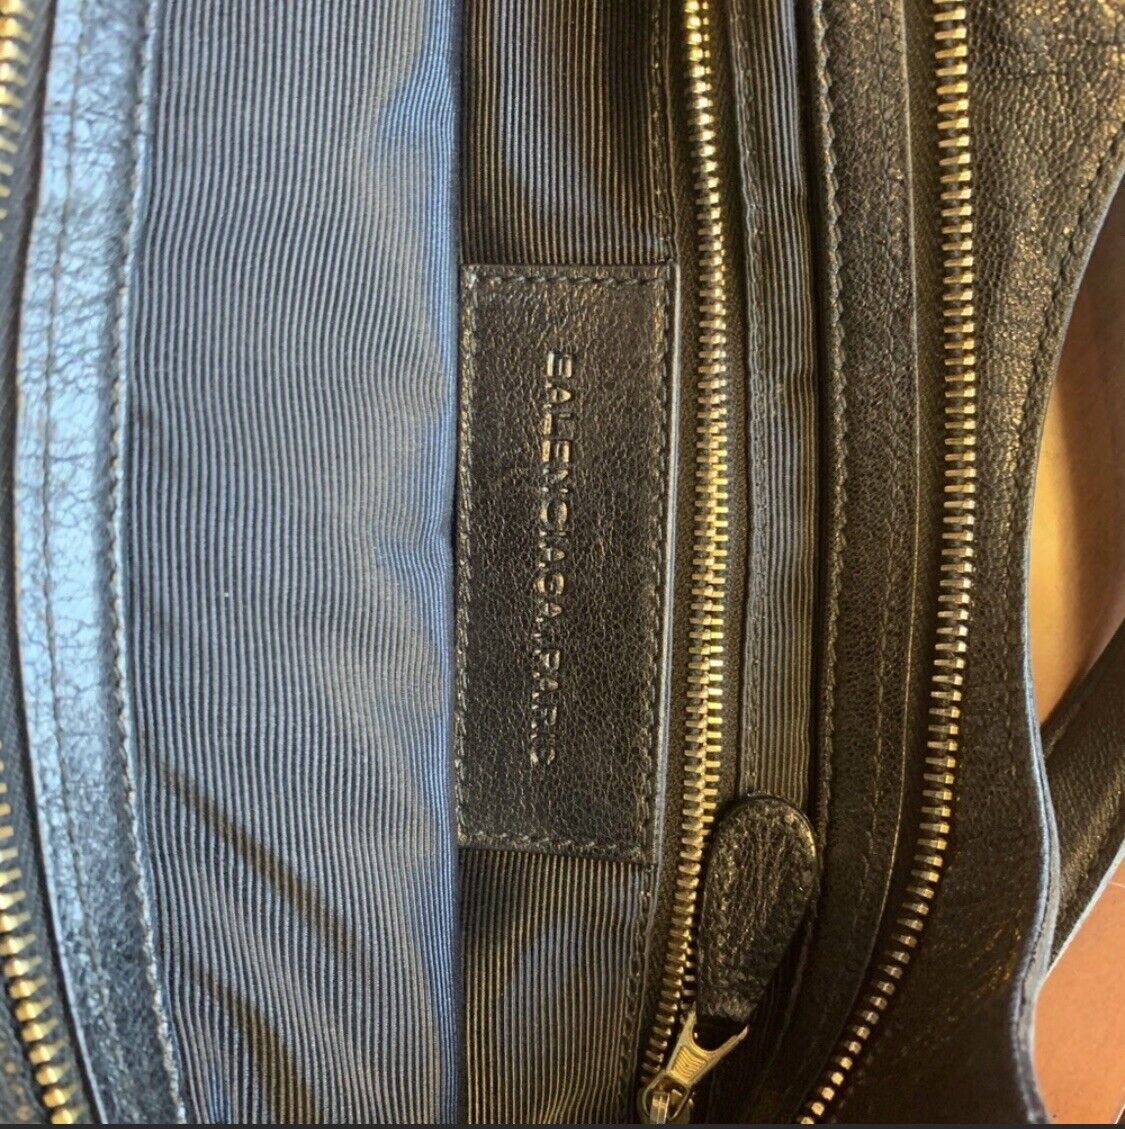 BALENCIAGA SUEDE TOTE BAG. An elegant handbag with adjustable strap. | eBay